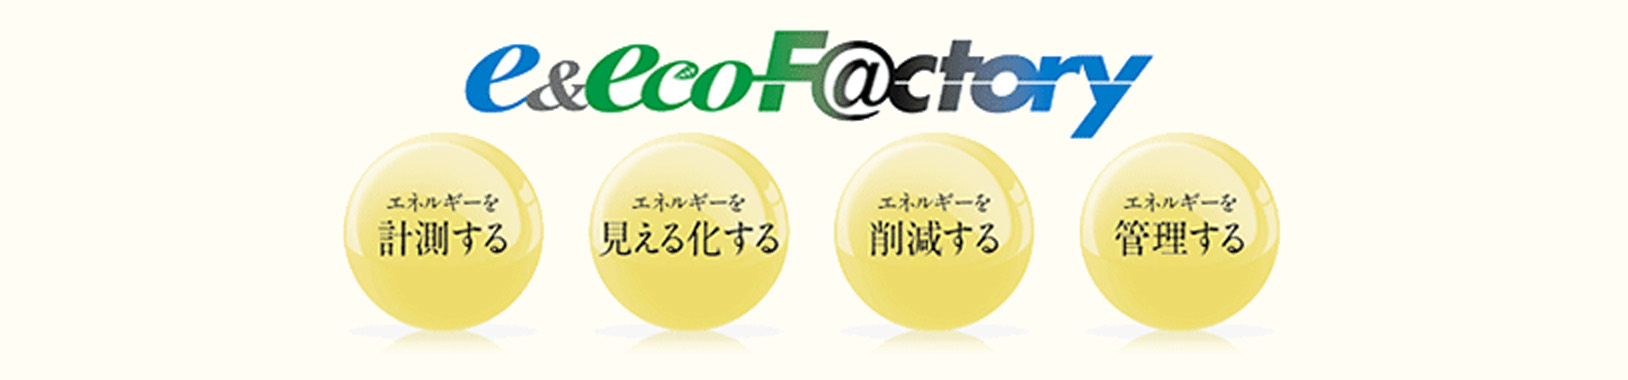 三菱電機の統合ソリューション「e&eco-F@ctory」